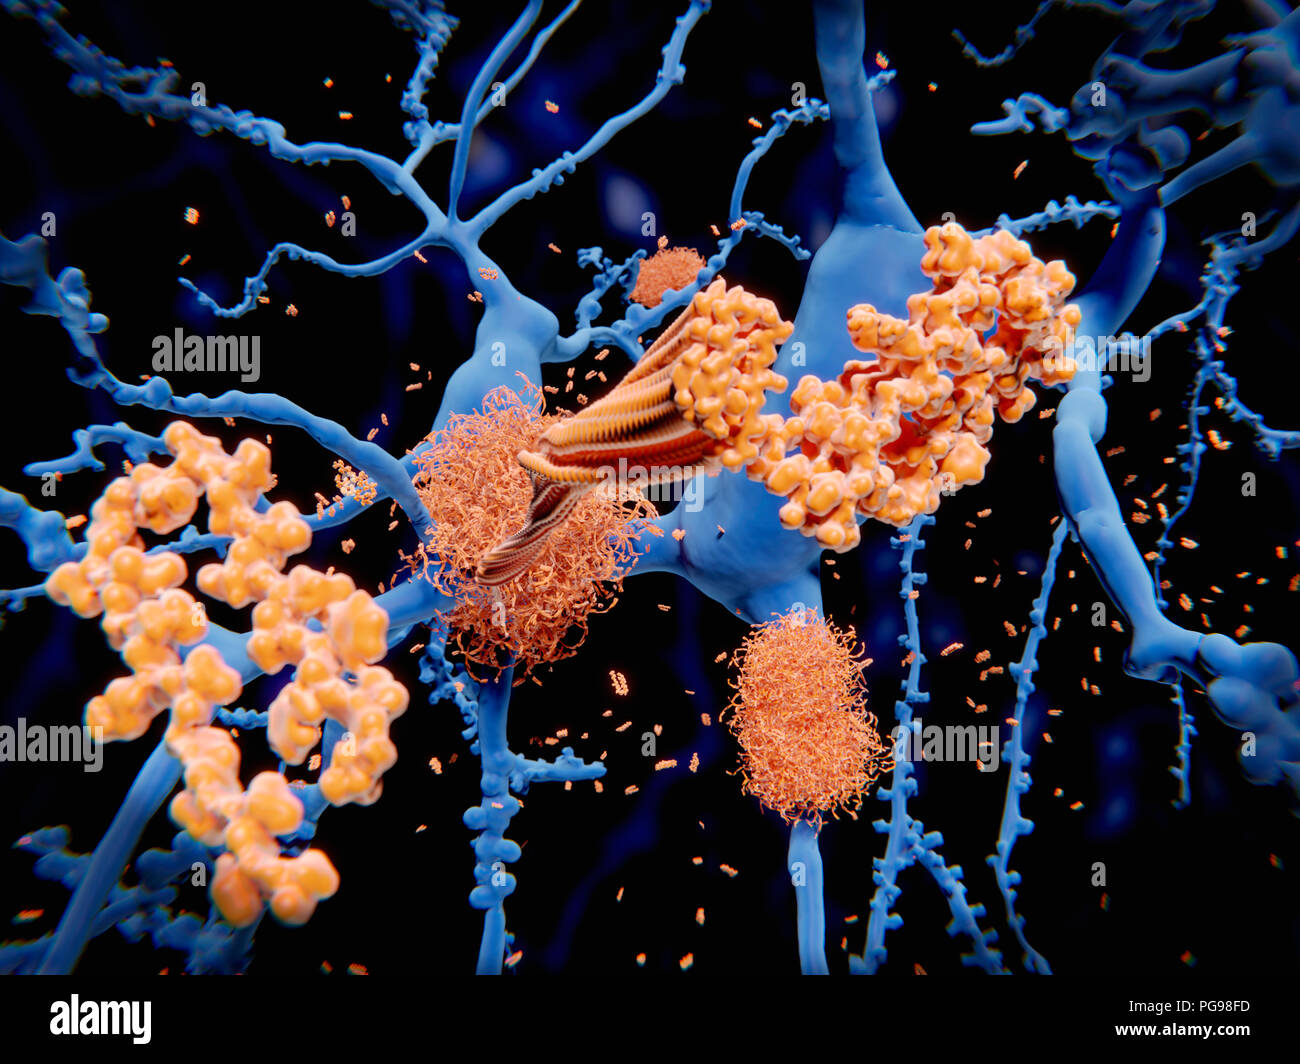 La protéine amyloïde dans la maladie d'Alzheimer. Illustration du processus menant à la formation de plaques amyloïdes (faisceaux enchevêtrés) sur les neurones (cellules nerveuses, bleu). Les plaques amyloïdes sont caractéristiques de la maladie d'Alzheimer. Ils conduisent à une dégénérescence des neurones touchés. Les processus cellulaires illustré ici a lieu après le peptide bêta-amyloïde le clivé par le gamma et bêta sécrétases. Les résidus de l'amyloïde quitte la membrane cellulaire, change de forme et d'agrégats en longues fibrilles. Ces plaques denses sous forme de fibrilles sur les cellules nerveuses. Banque D'Images